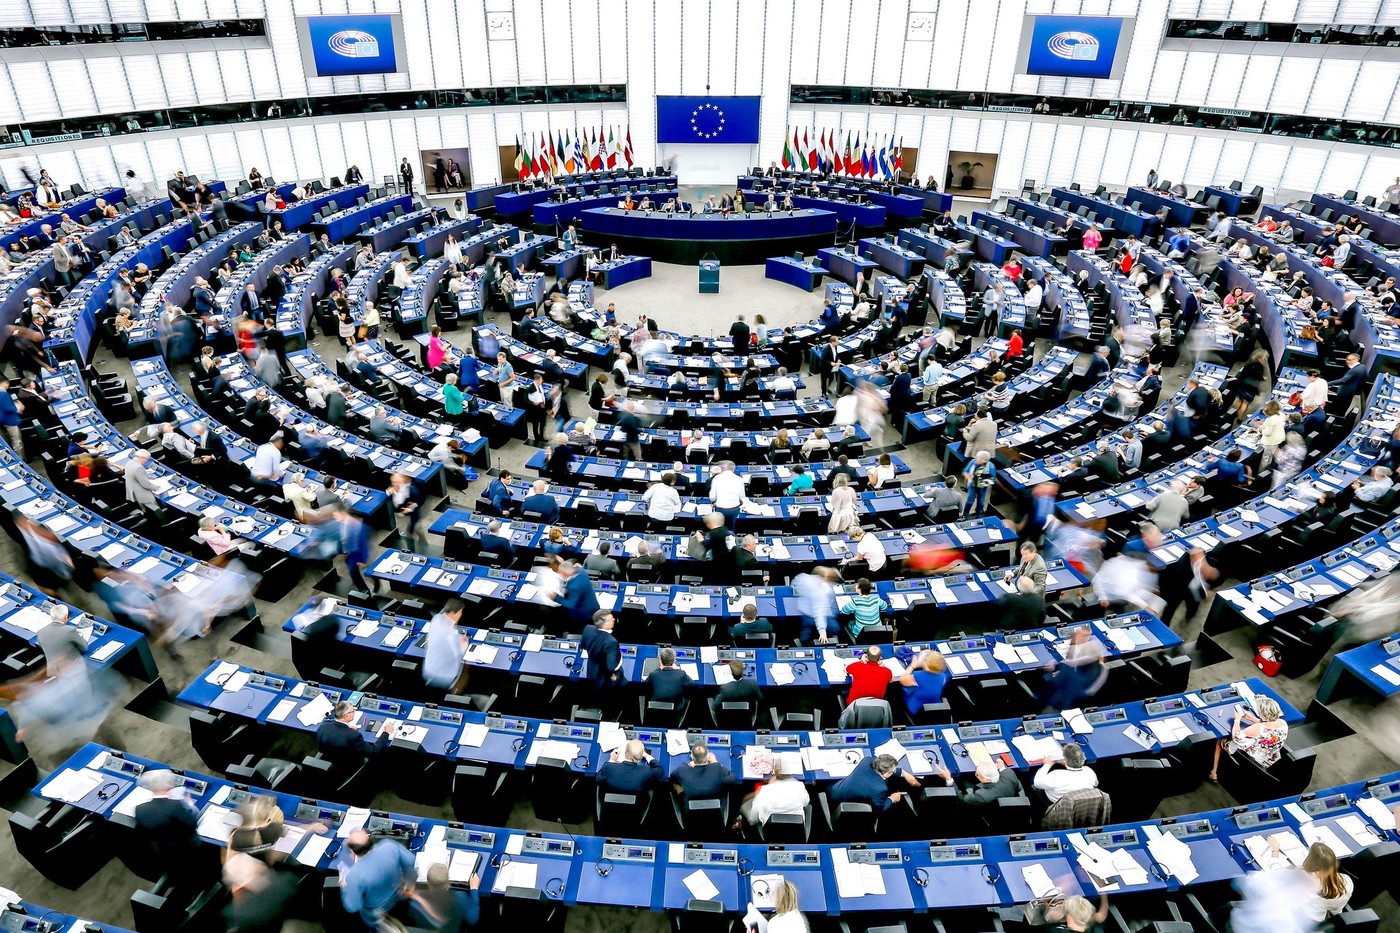 Le parlement européen "subordonne à la levée des sanctions par la Chine [son] examen de l'accord sur les investissements", selon la résolution votée le 20 mai 2021. (Source : La Croix)